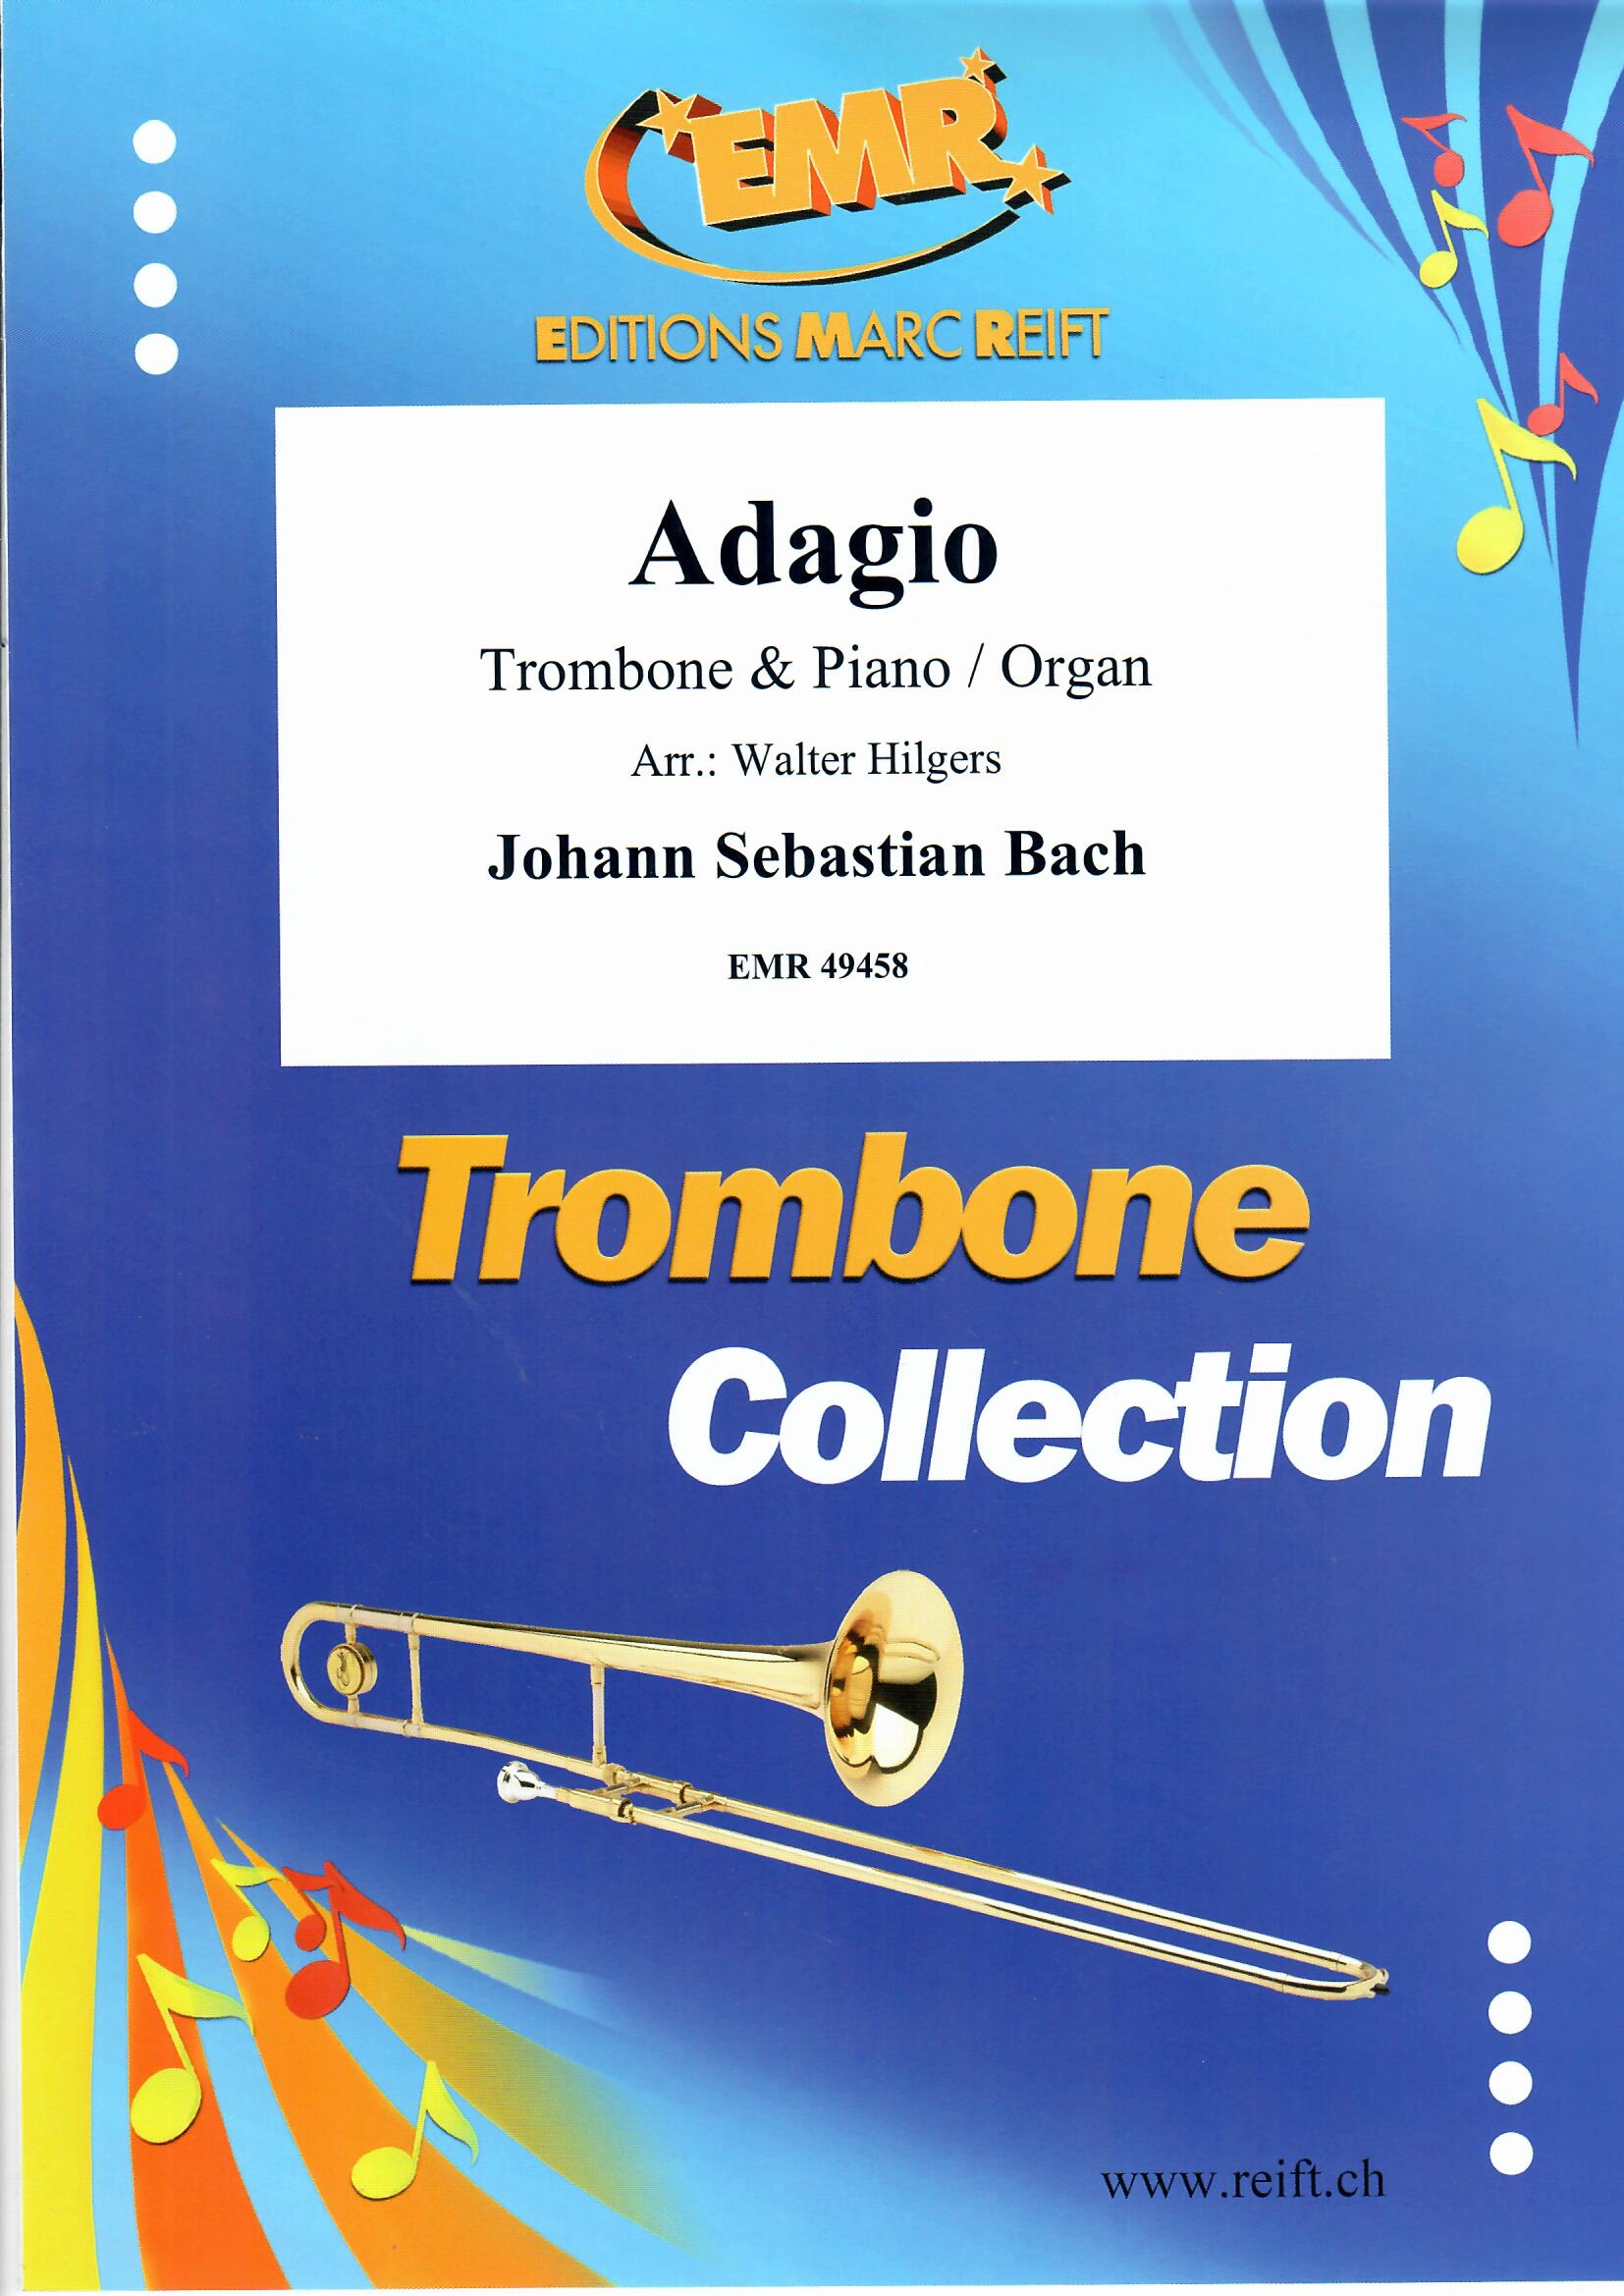 ADAGIO - Trombone & Organ, SOLOS - Trombone